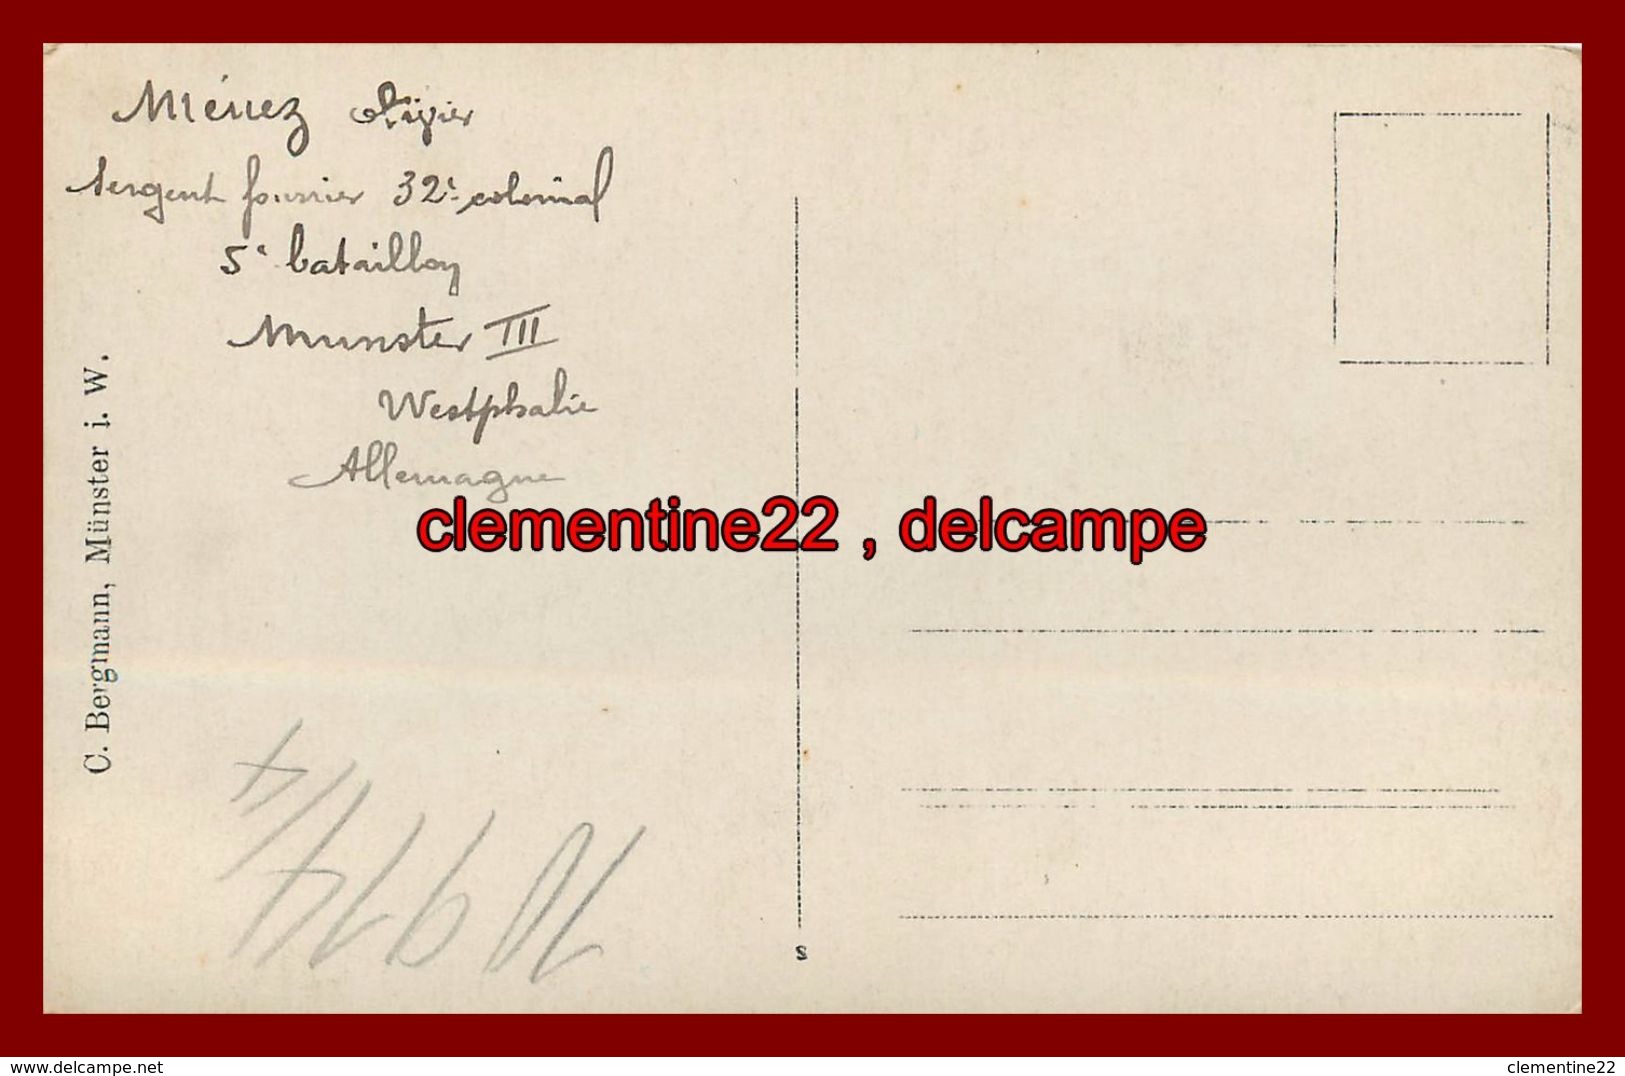 Munster , Carte Photo  , Camp Prisonniers , Théatre ,  Allemagne ,  Militaire , Guerre 1914 1918 Cachet - Munster